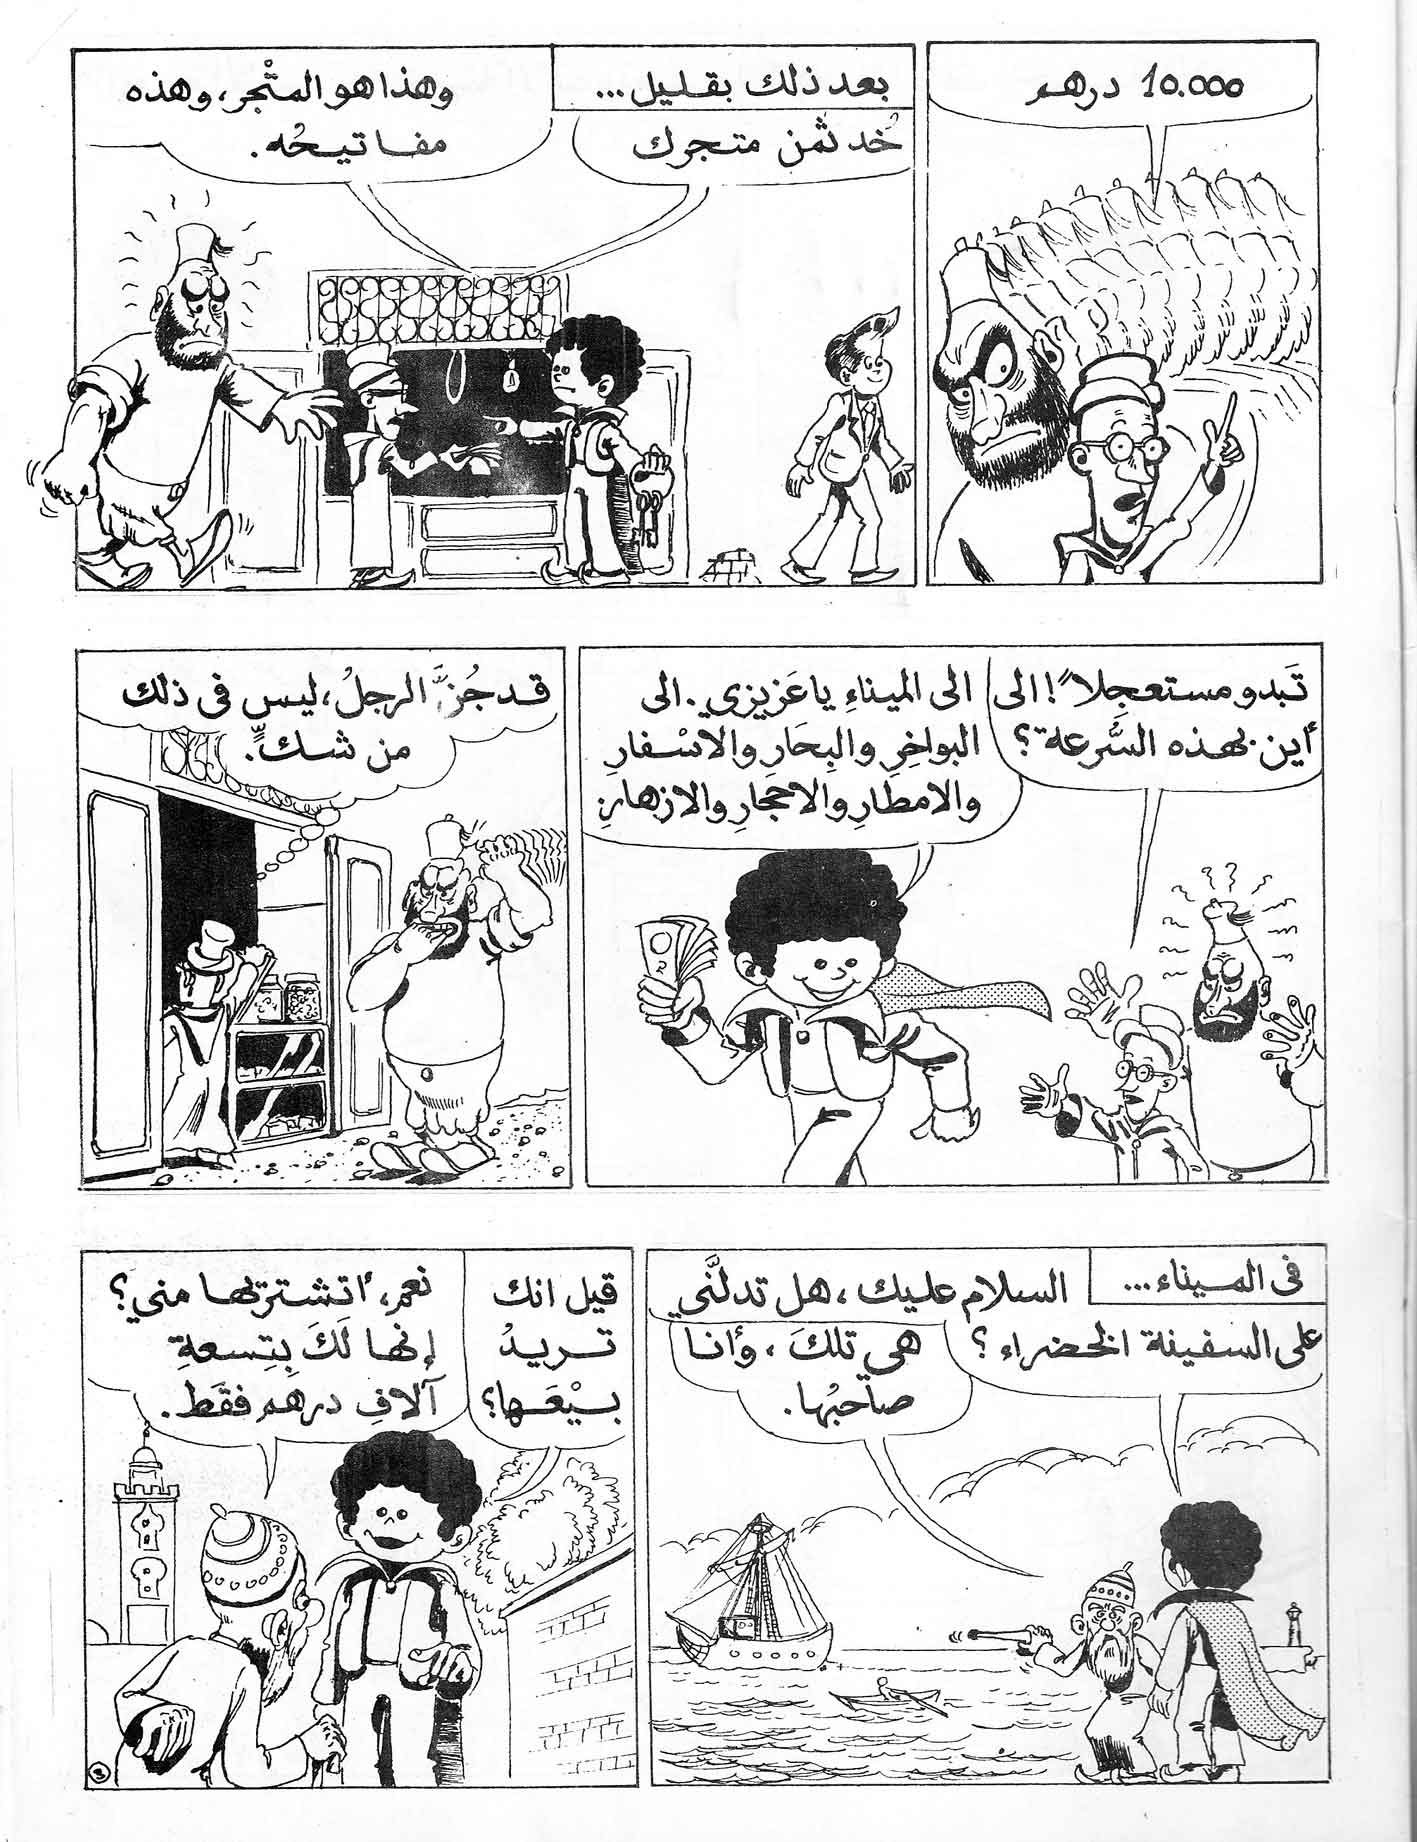 bande dessinee en arabe